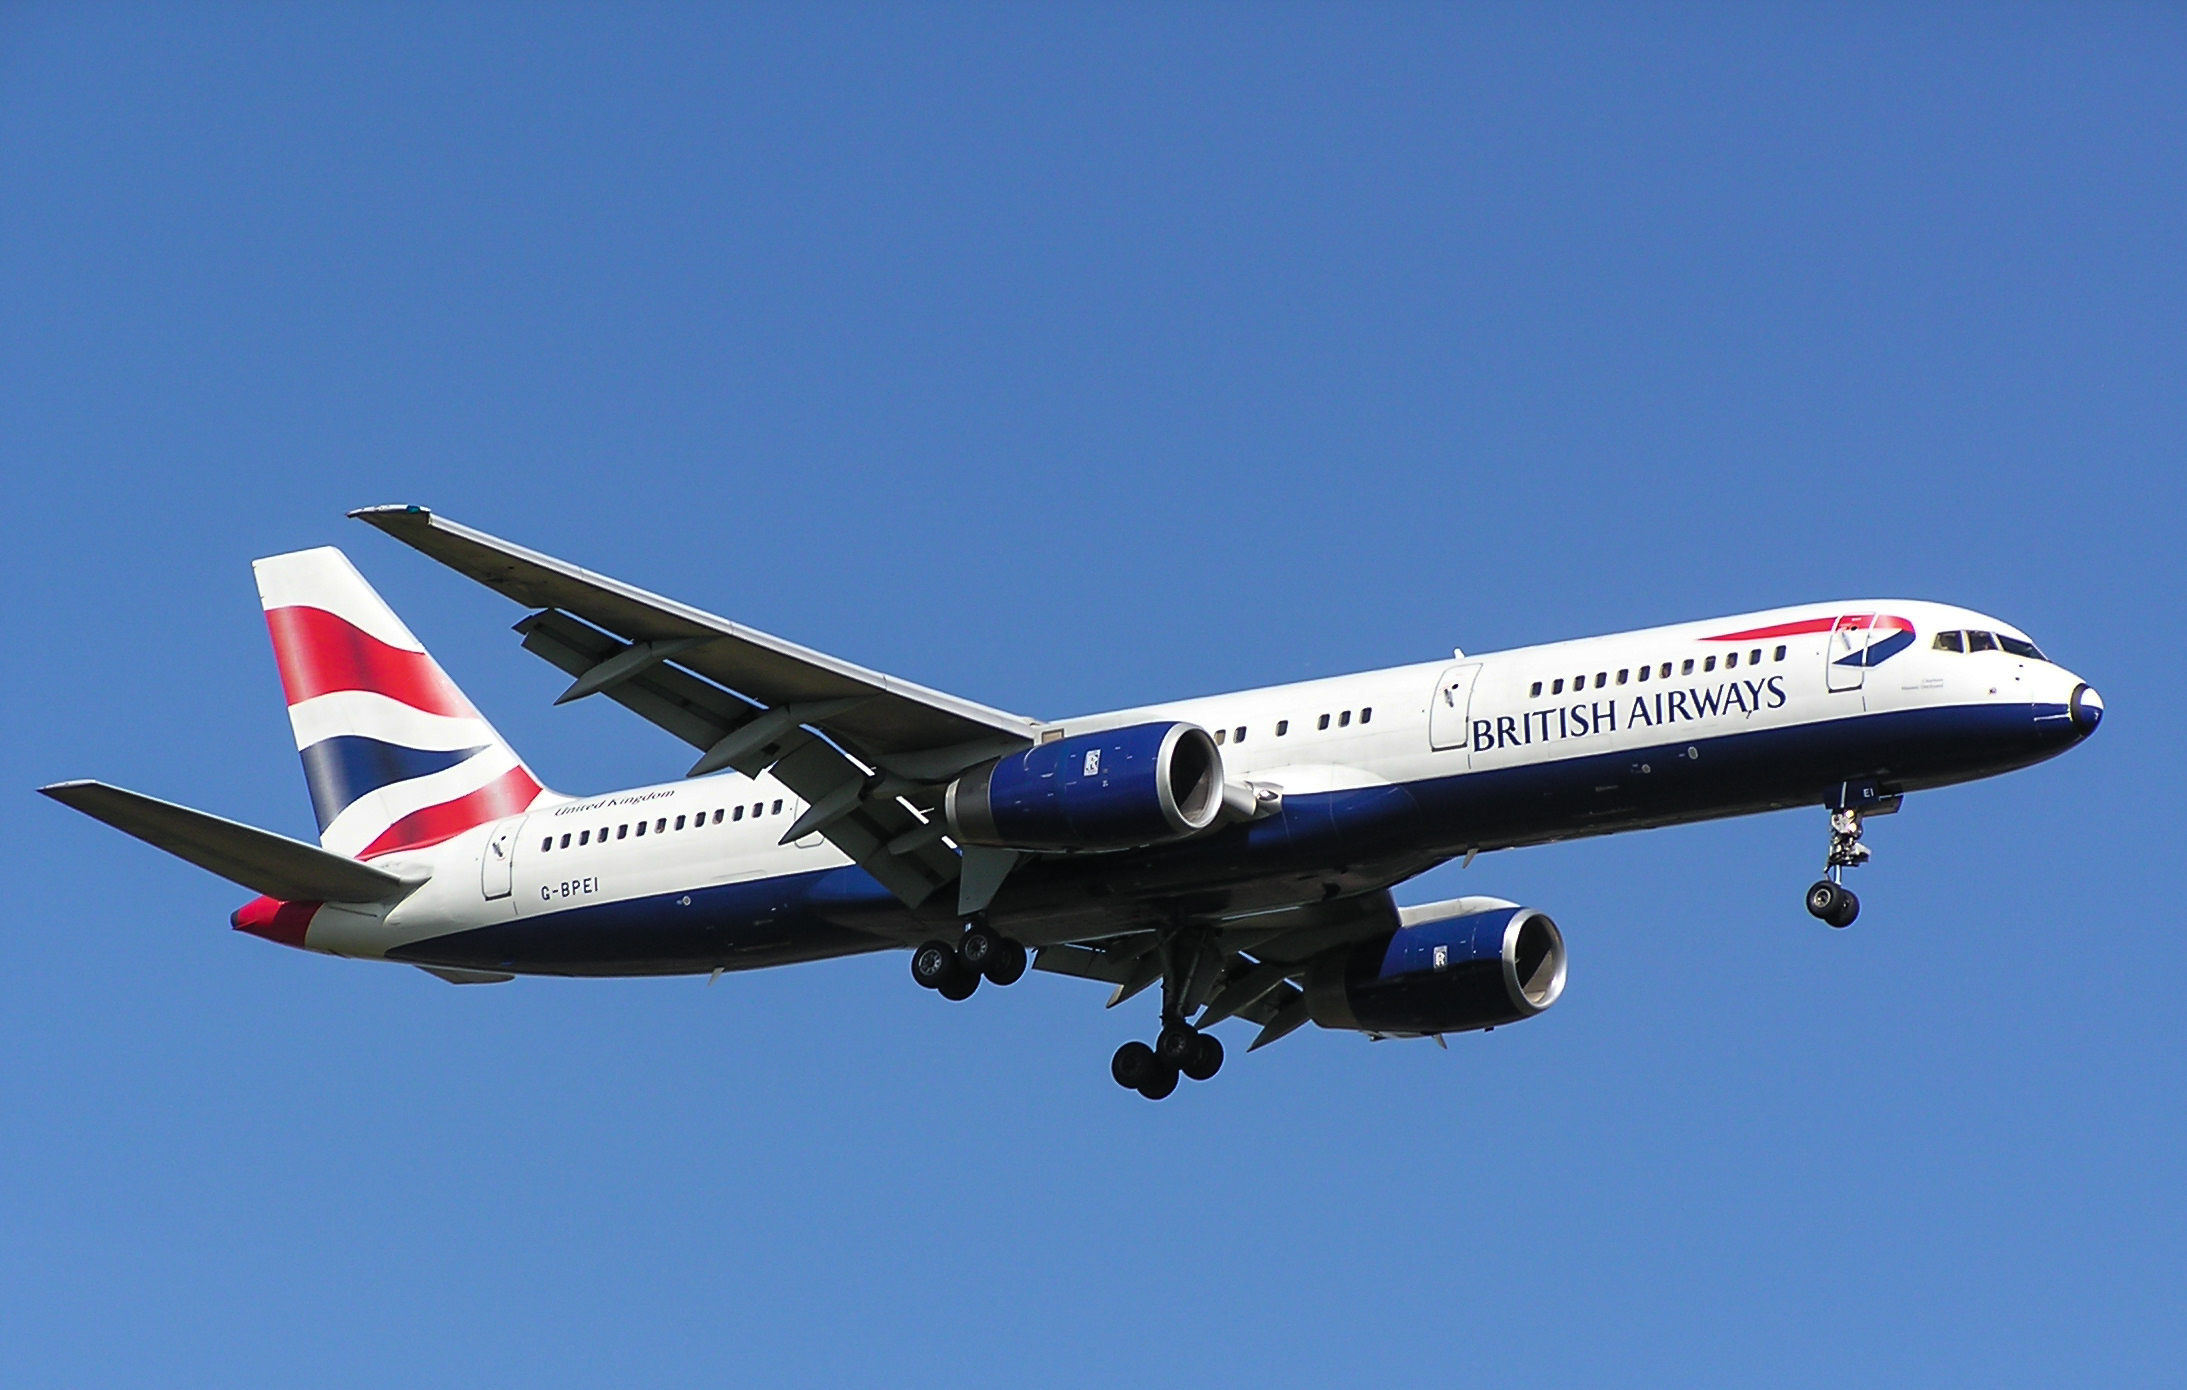 G-BPEI/GBPEI British Airways Boeing 757-236ER Photo by Ayronautica - AVSpotters.com